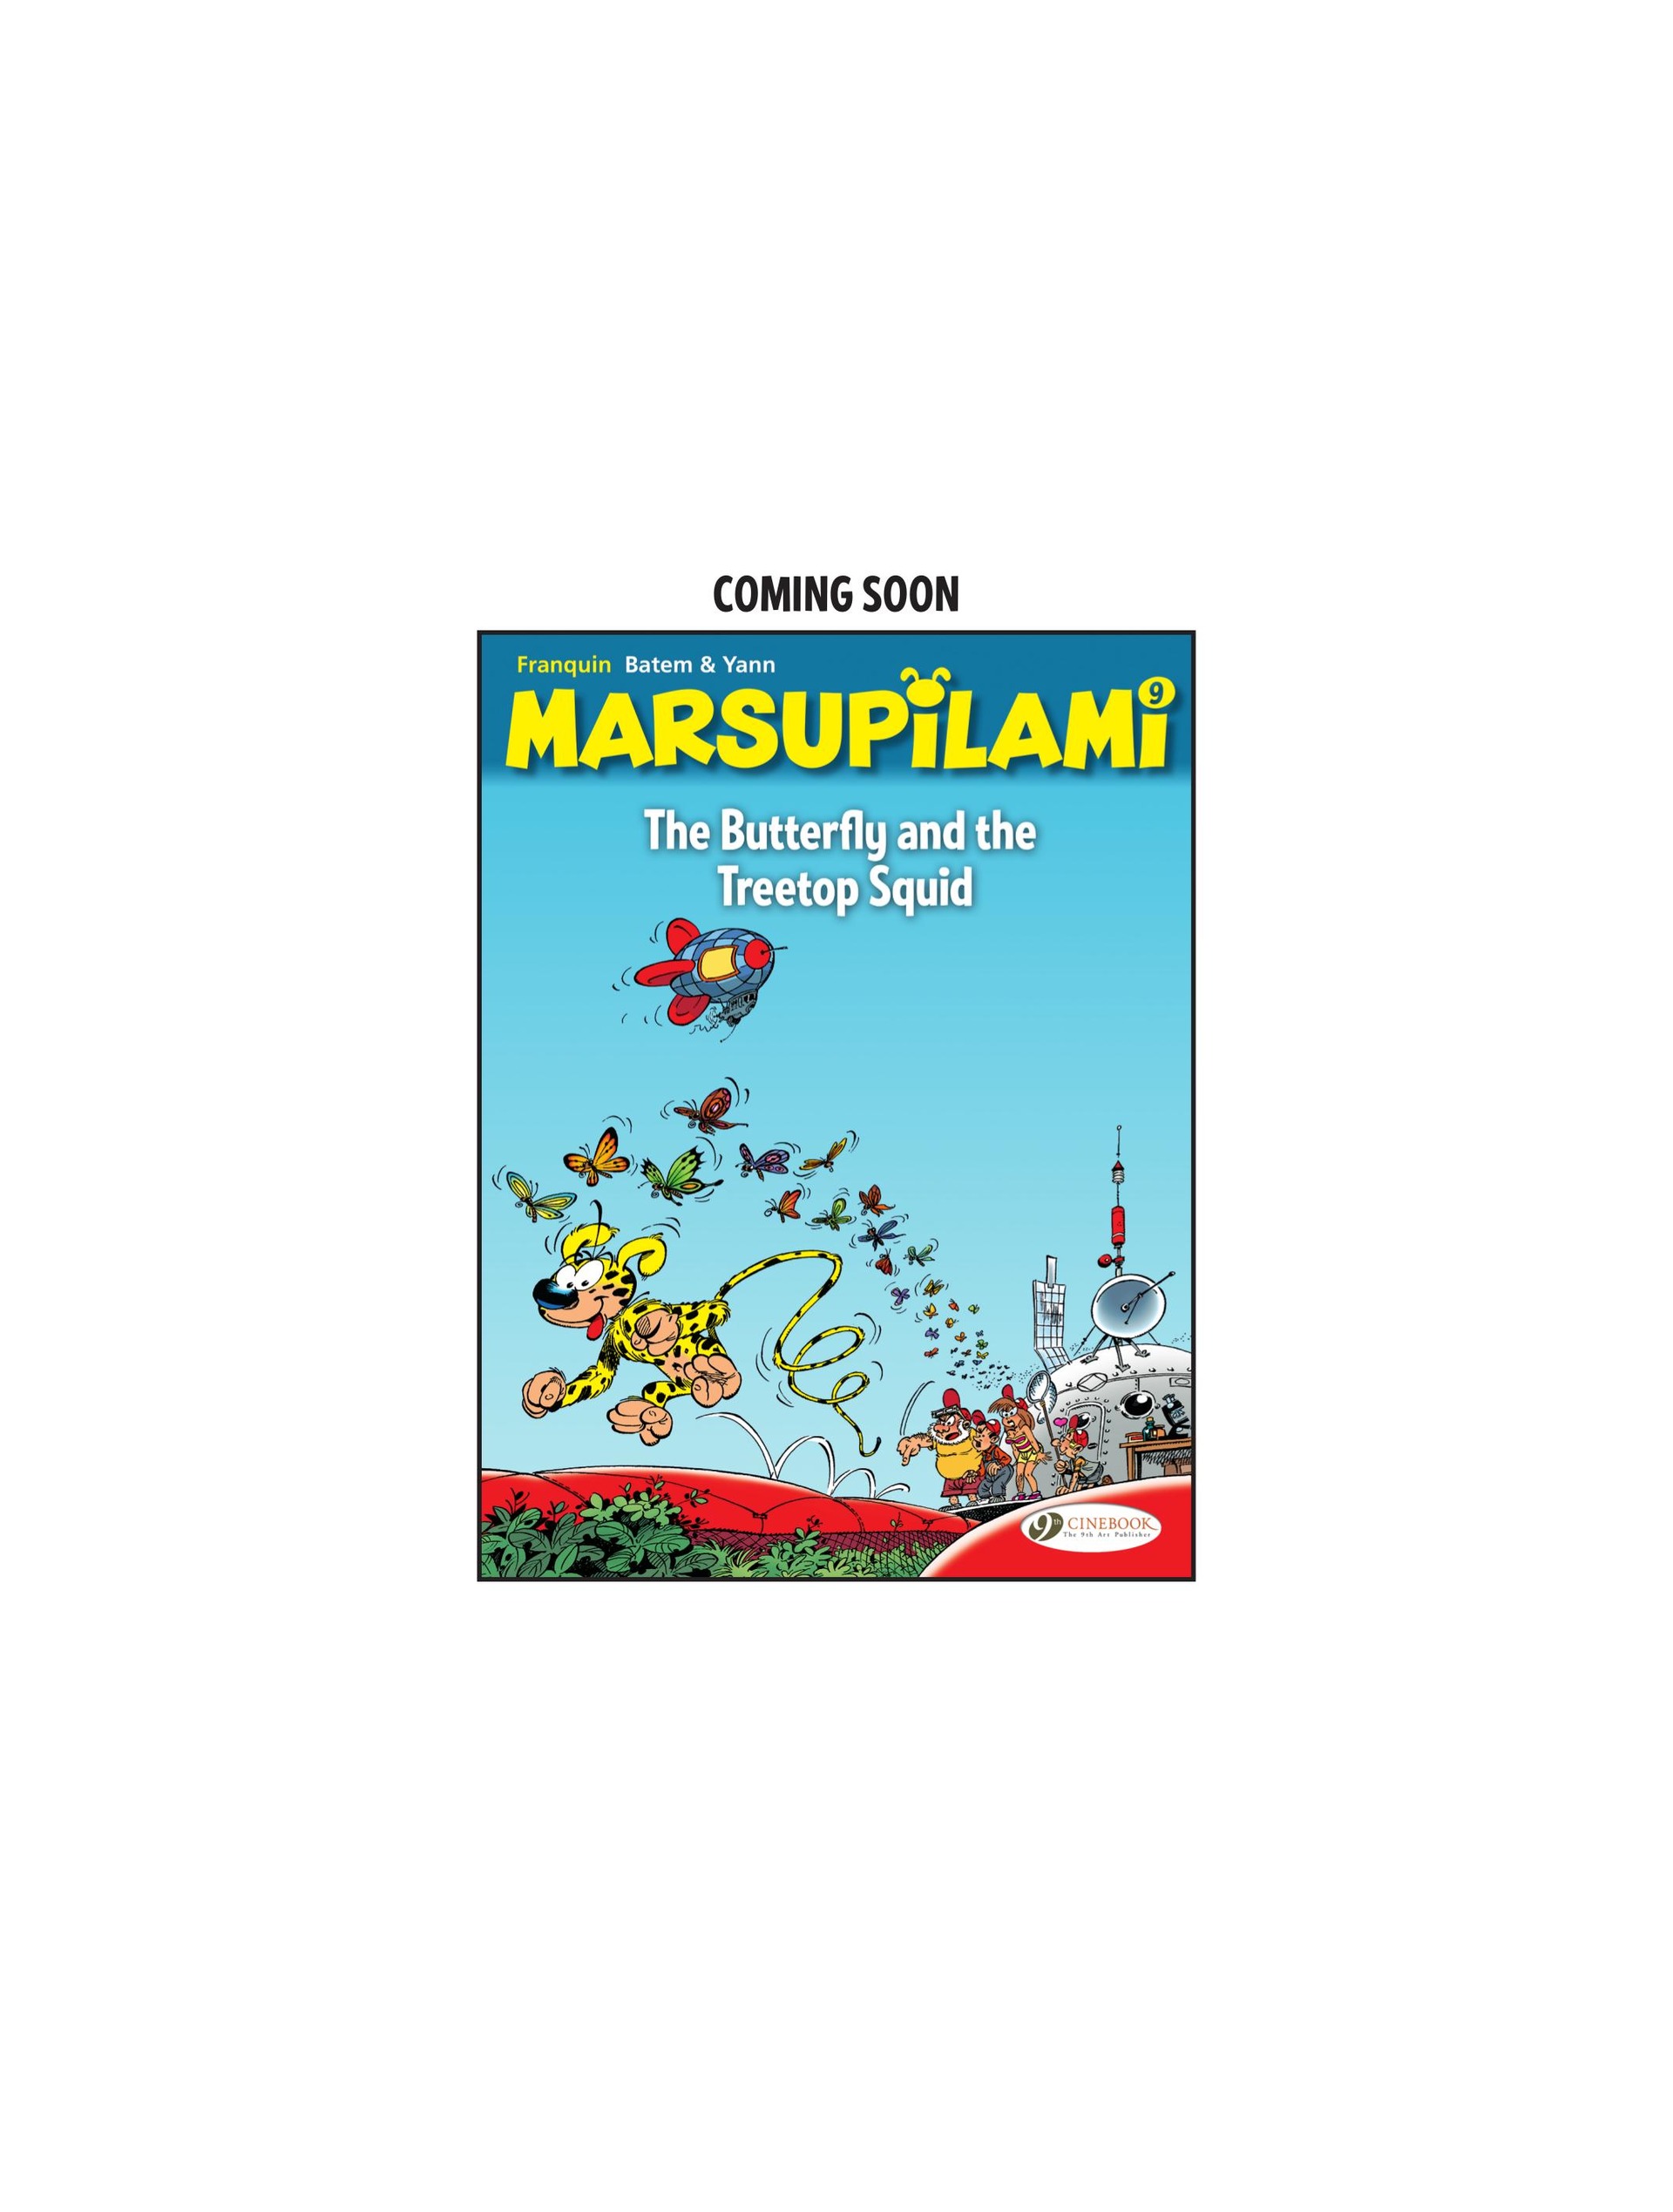 Read online Marsupilami comic -  Issue #8 - 50